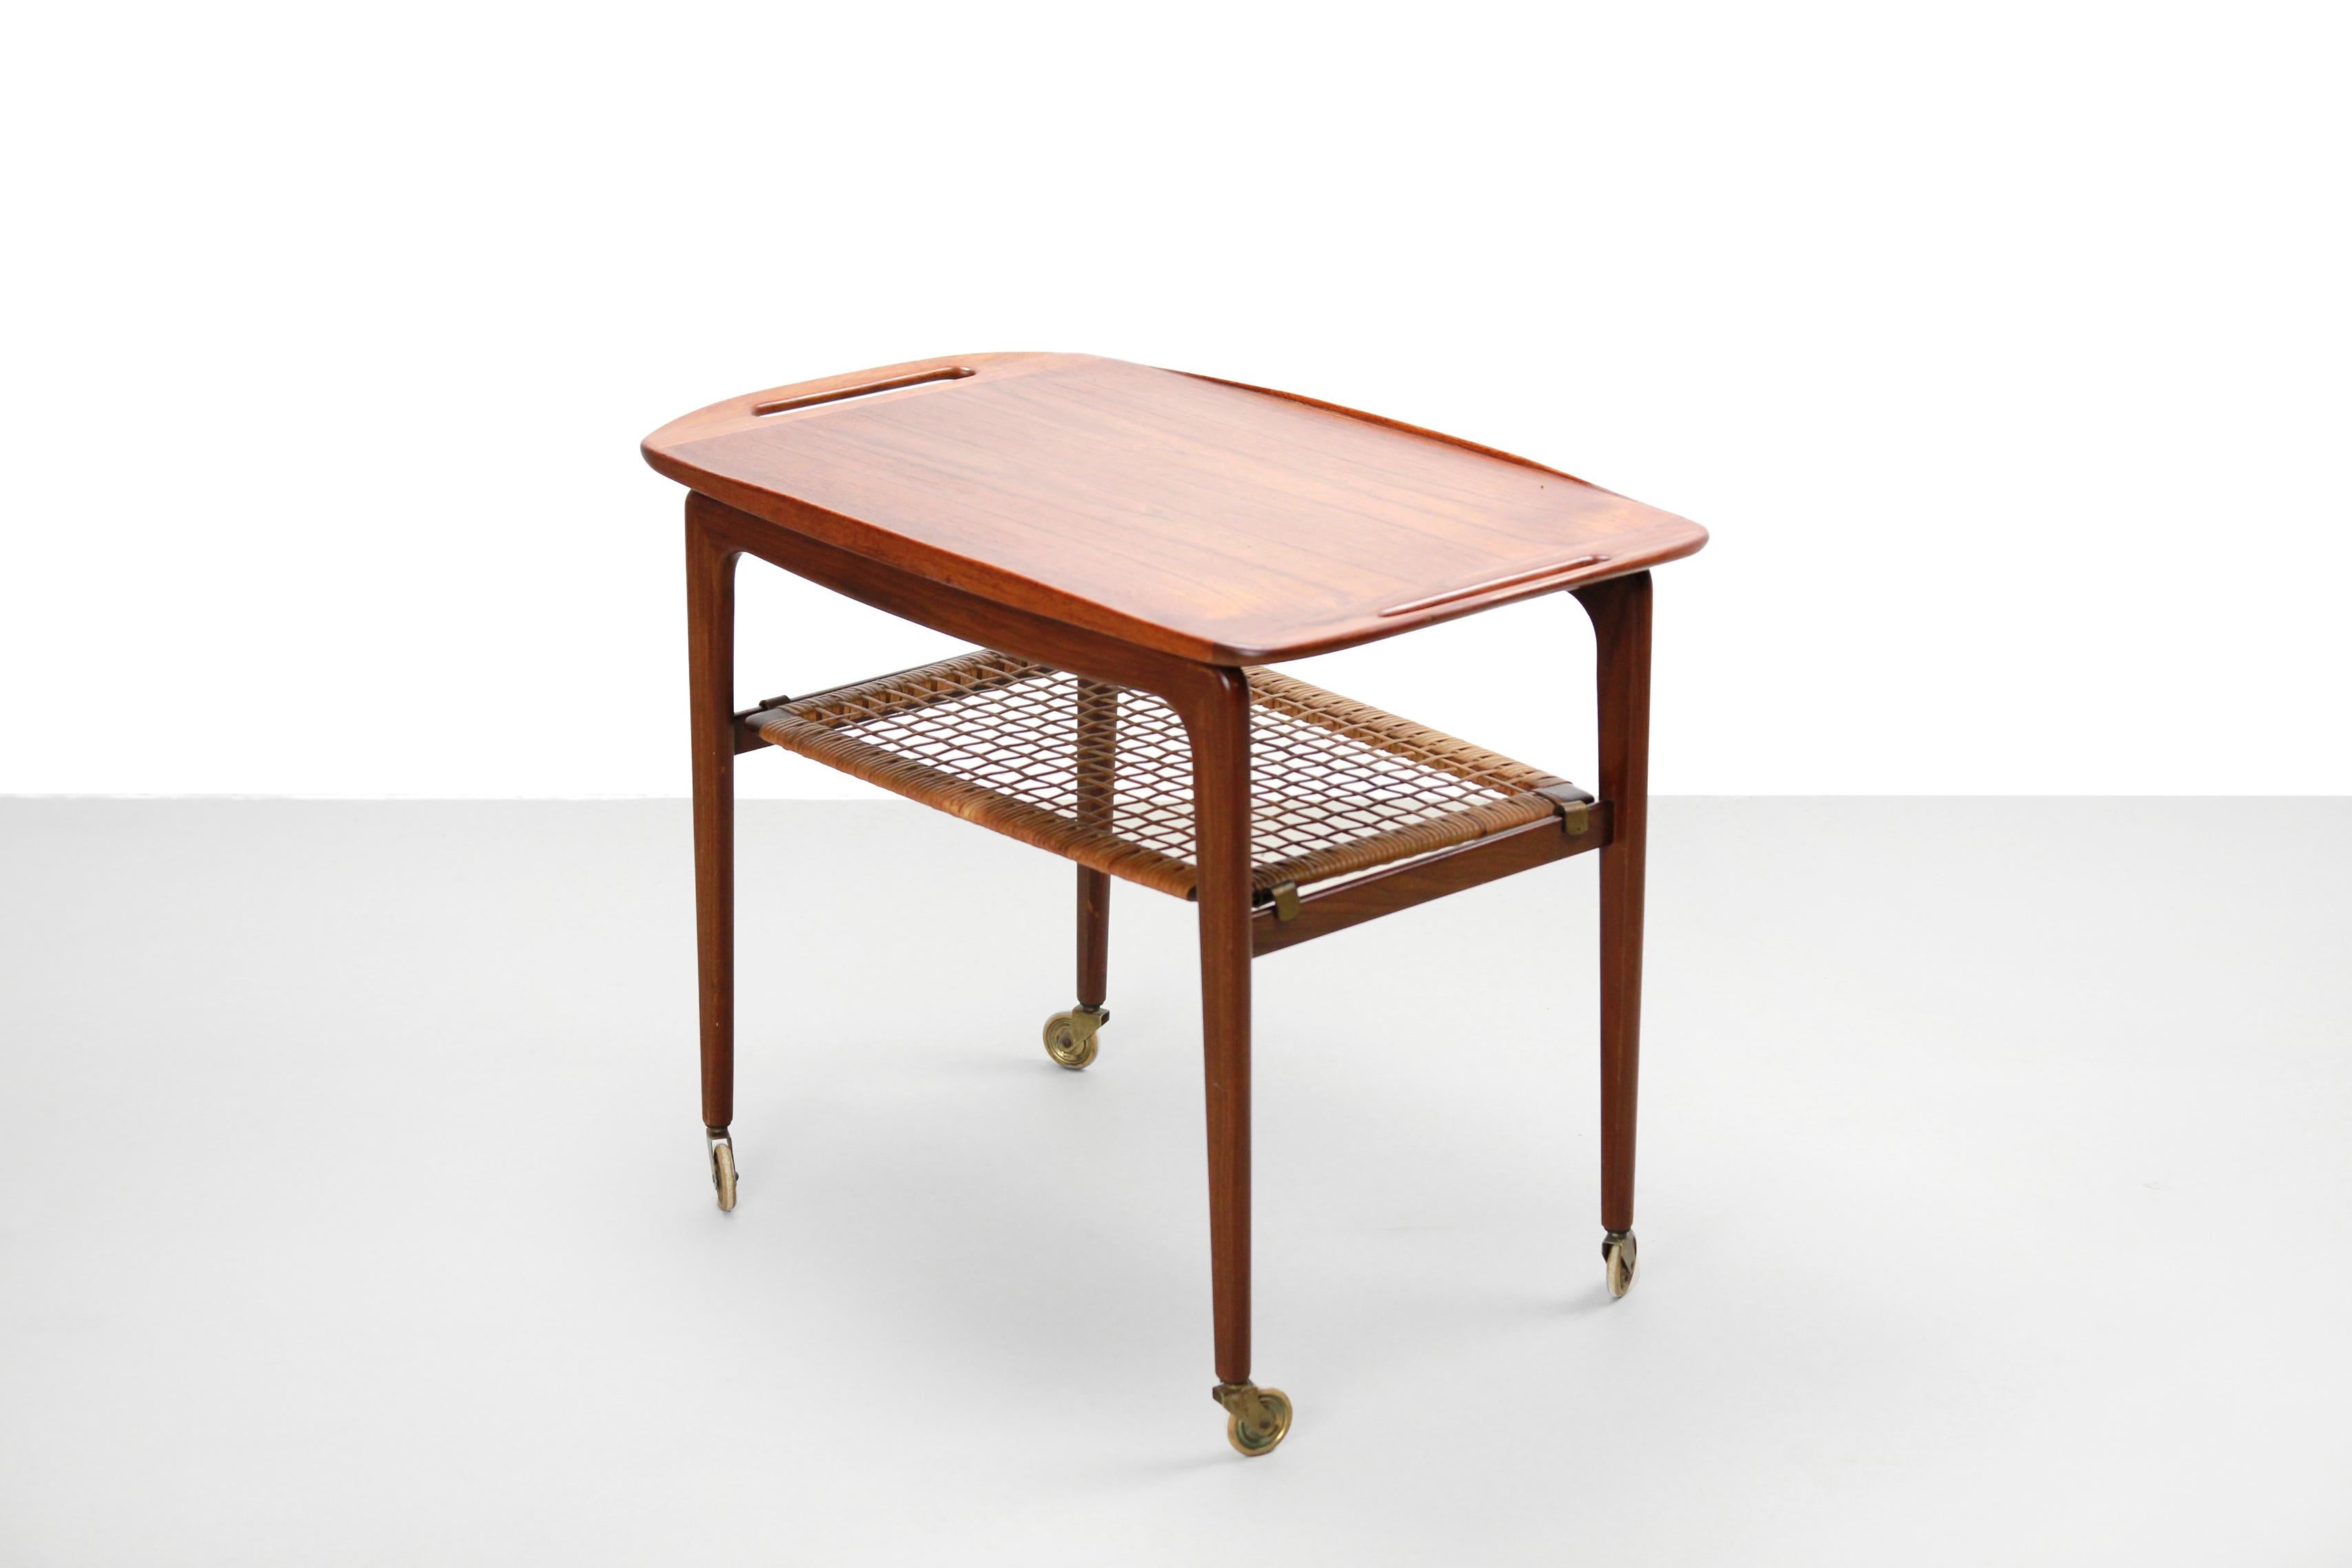 Dieser Teewagen (oder Tabletttisch) wurde von Johannes Andersen entworfen und ist größtenteils aus massivem Teakholz von höchster Qualität gefertigt. Der Aufsatz kann als Tablett verwendet werden:: und dank des cleveren Designs können Sie ihn